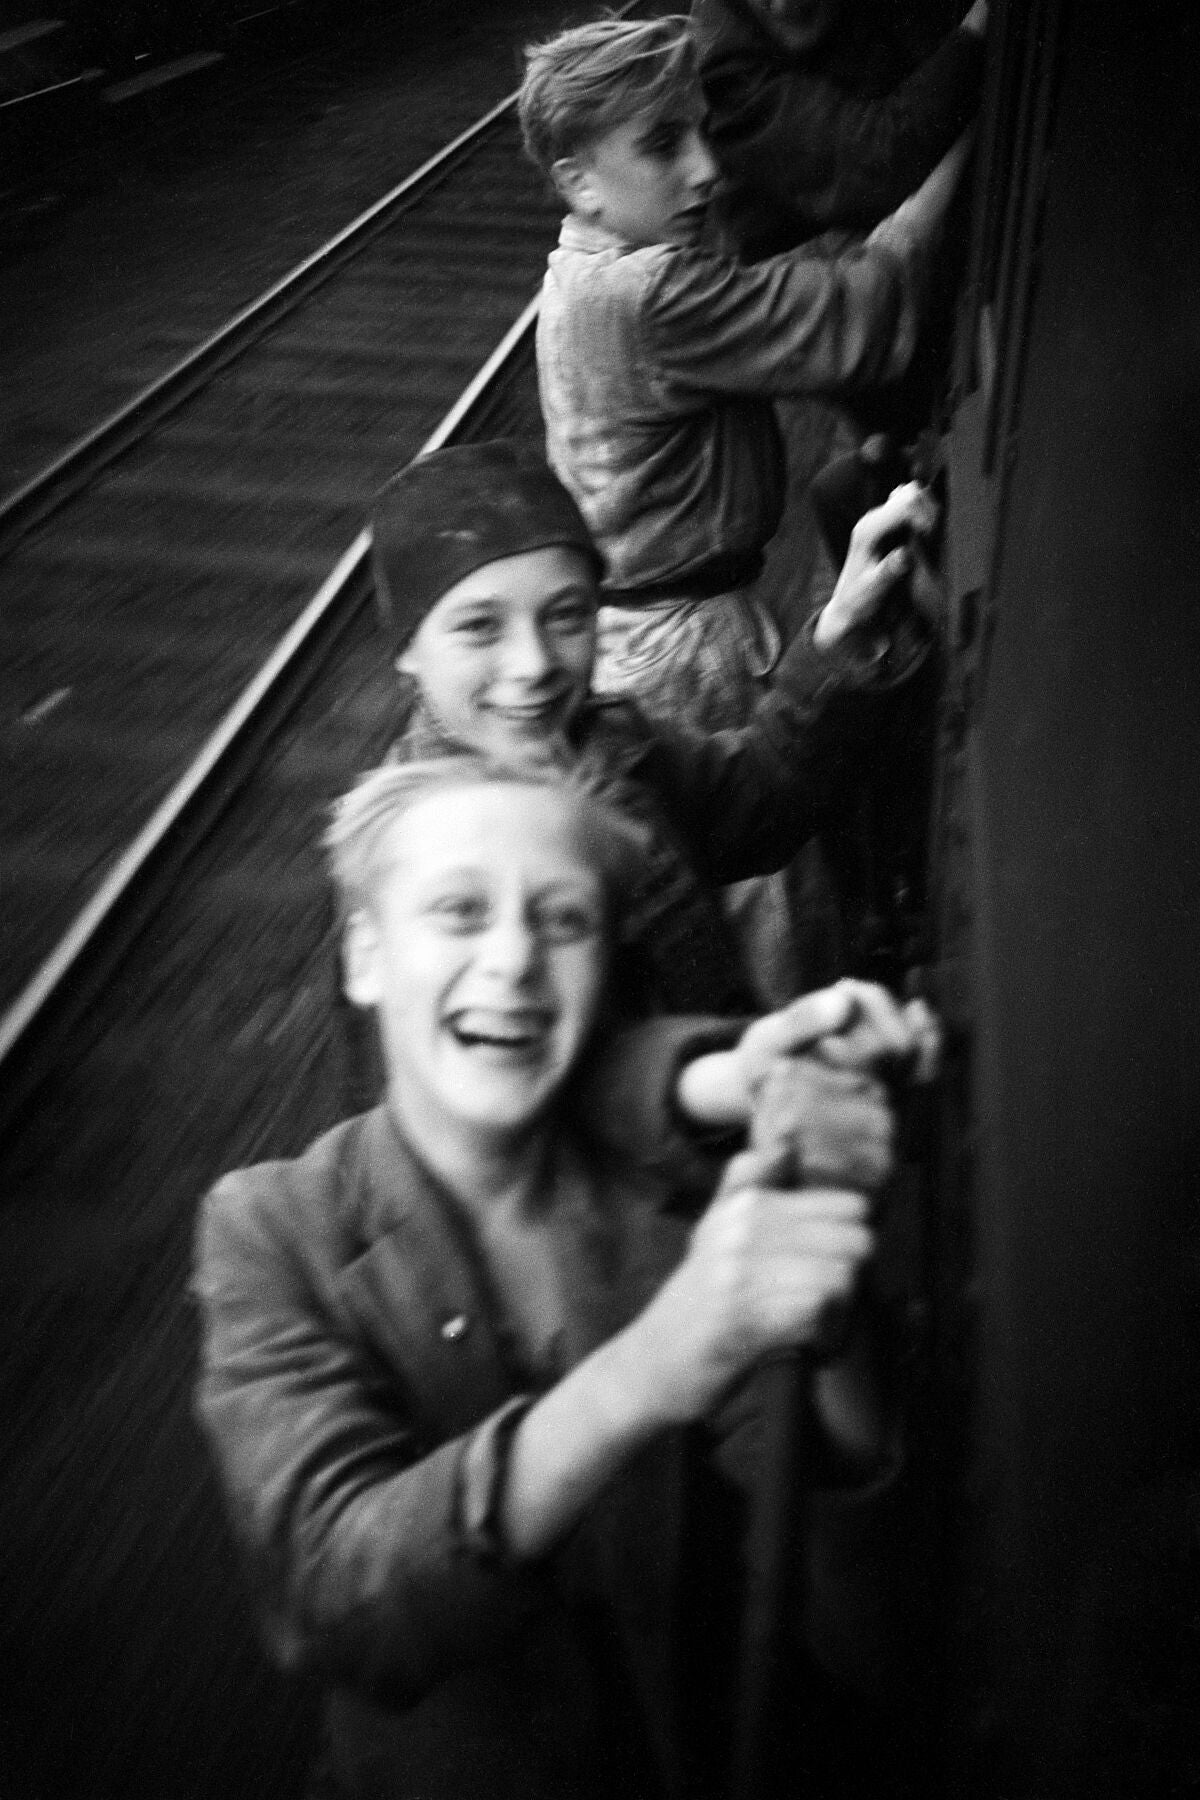 Les garçons s'accrochent à un train alors qu'ils célèbrent la libération des Pays-Bas de l'occupation allemande (II) - de Menno Huizinga - 1945